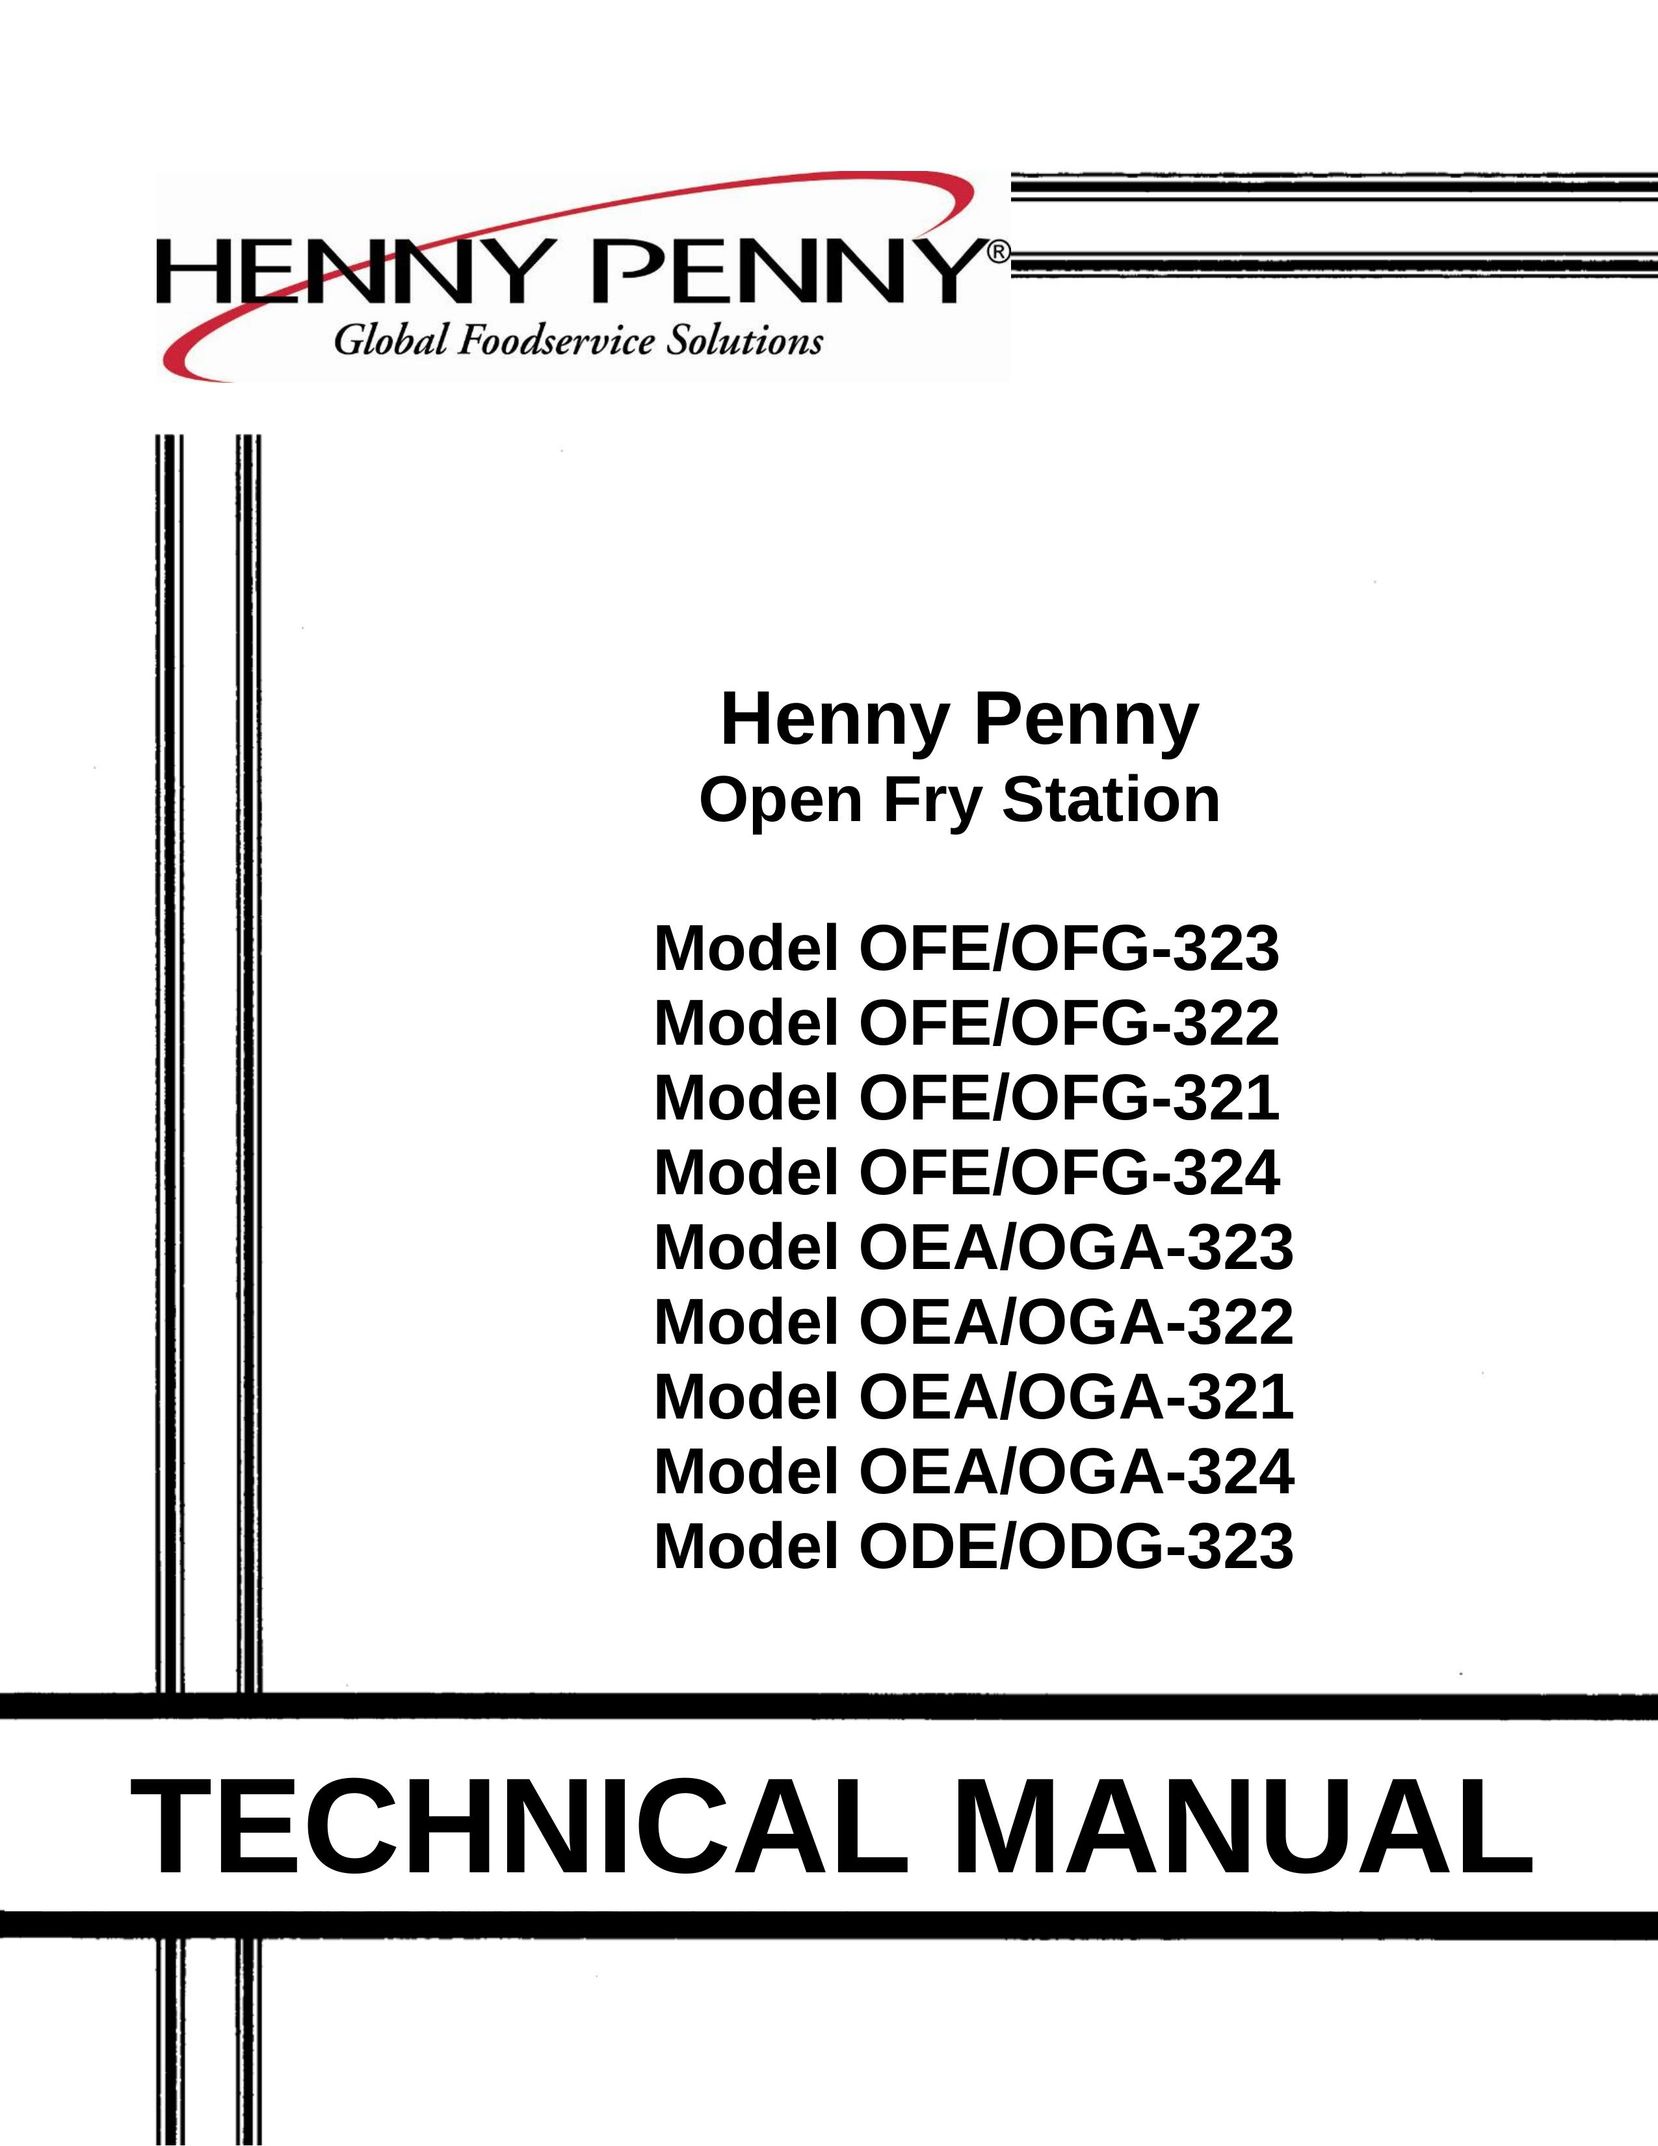 Henny Penny ODE/ODG-323 Fryer User Manual